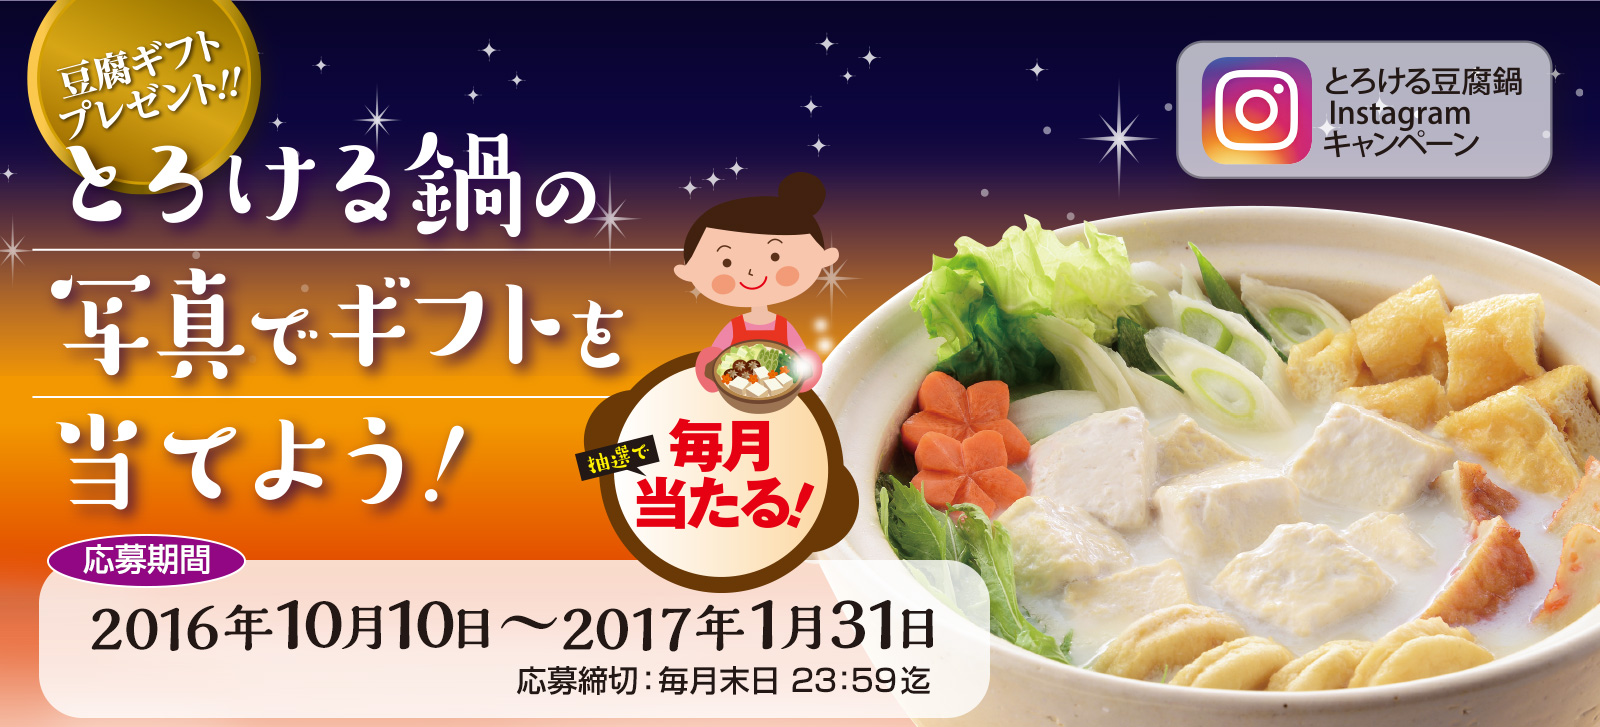 【キャンペーン】とろける豆腐鍋インスタグラムキャンペーン